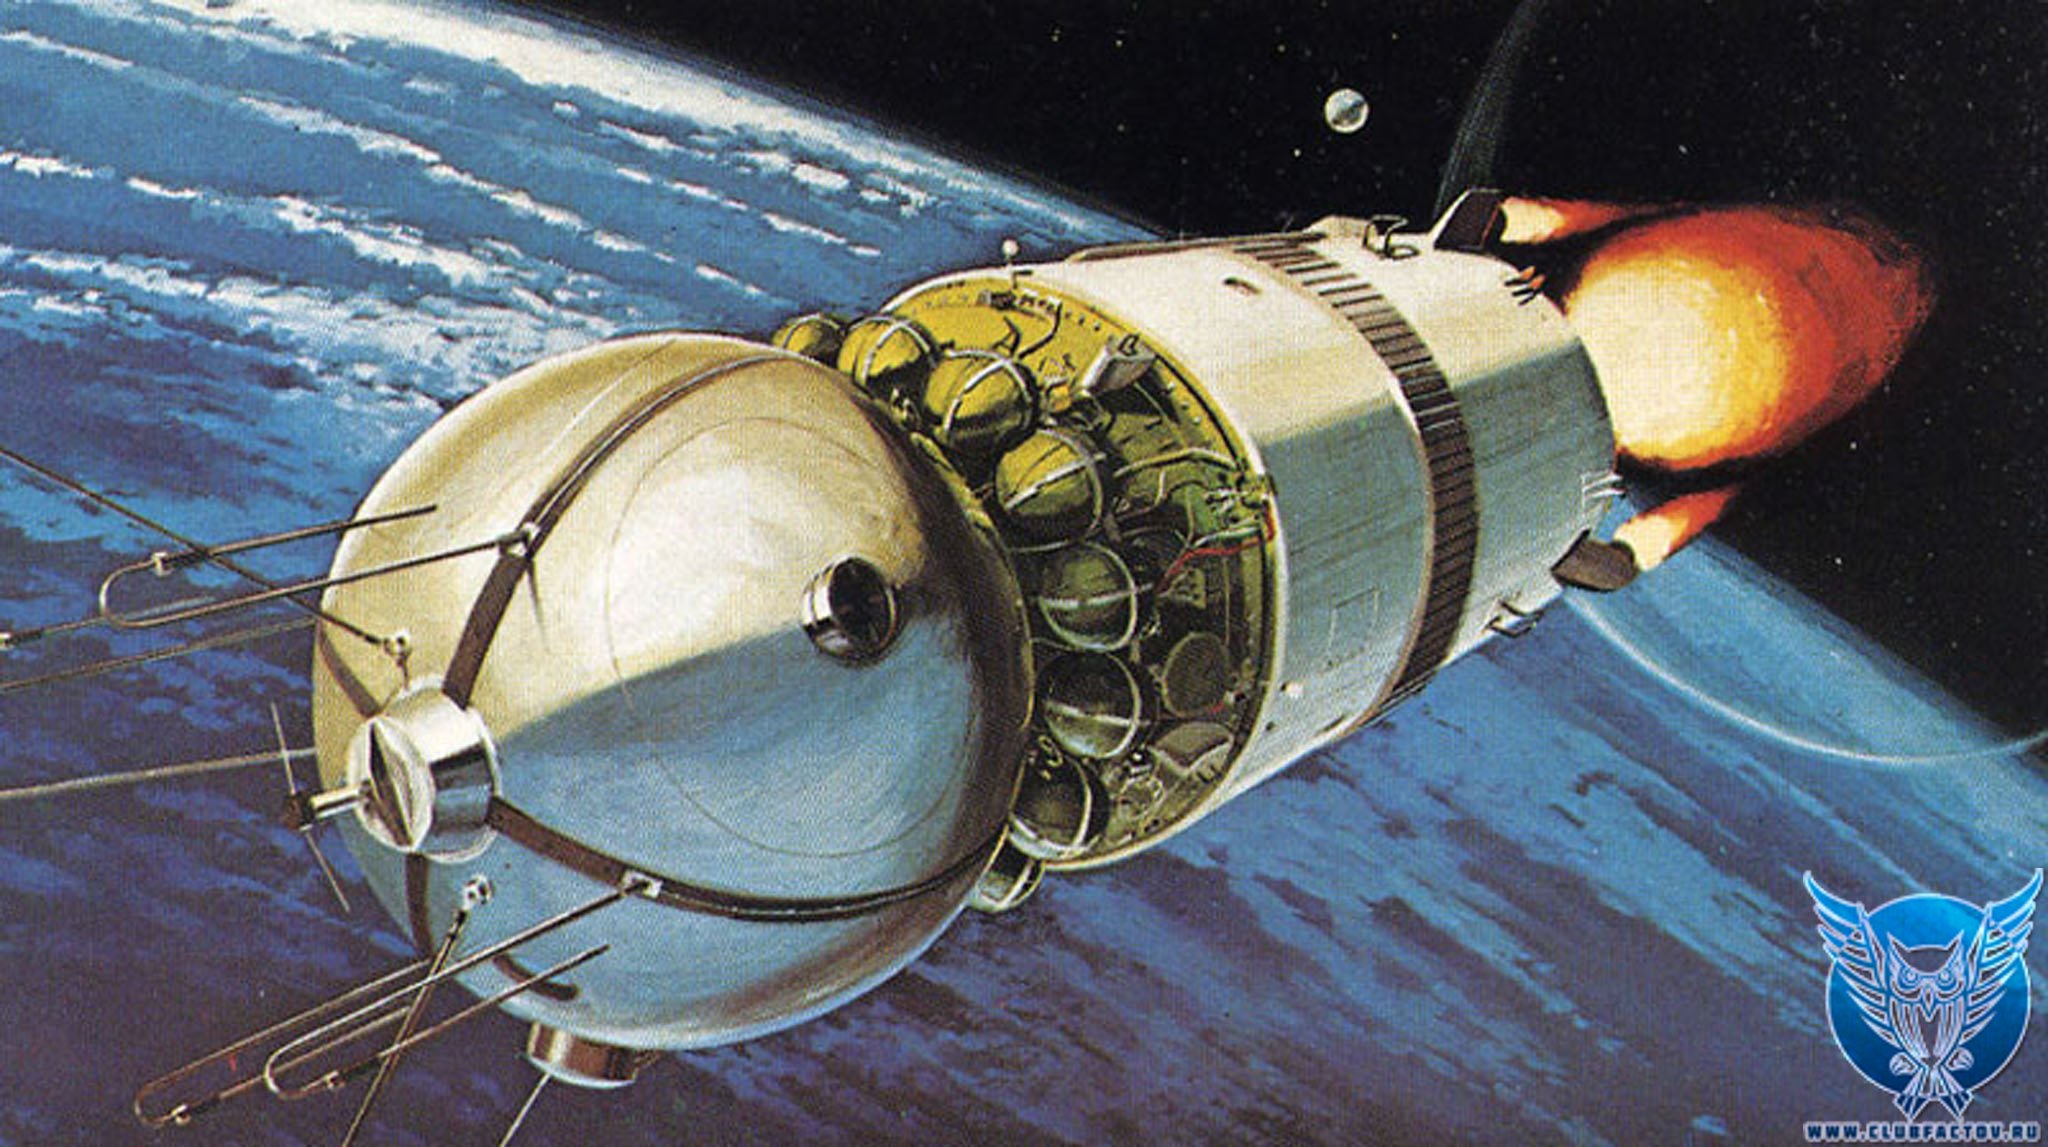 Как назывался корабль первого космонавта